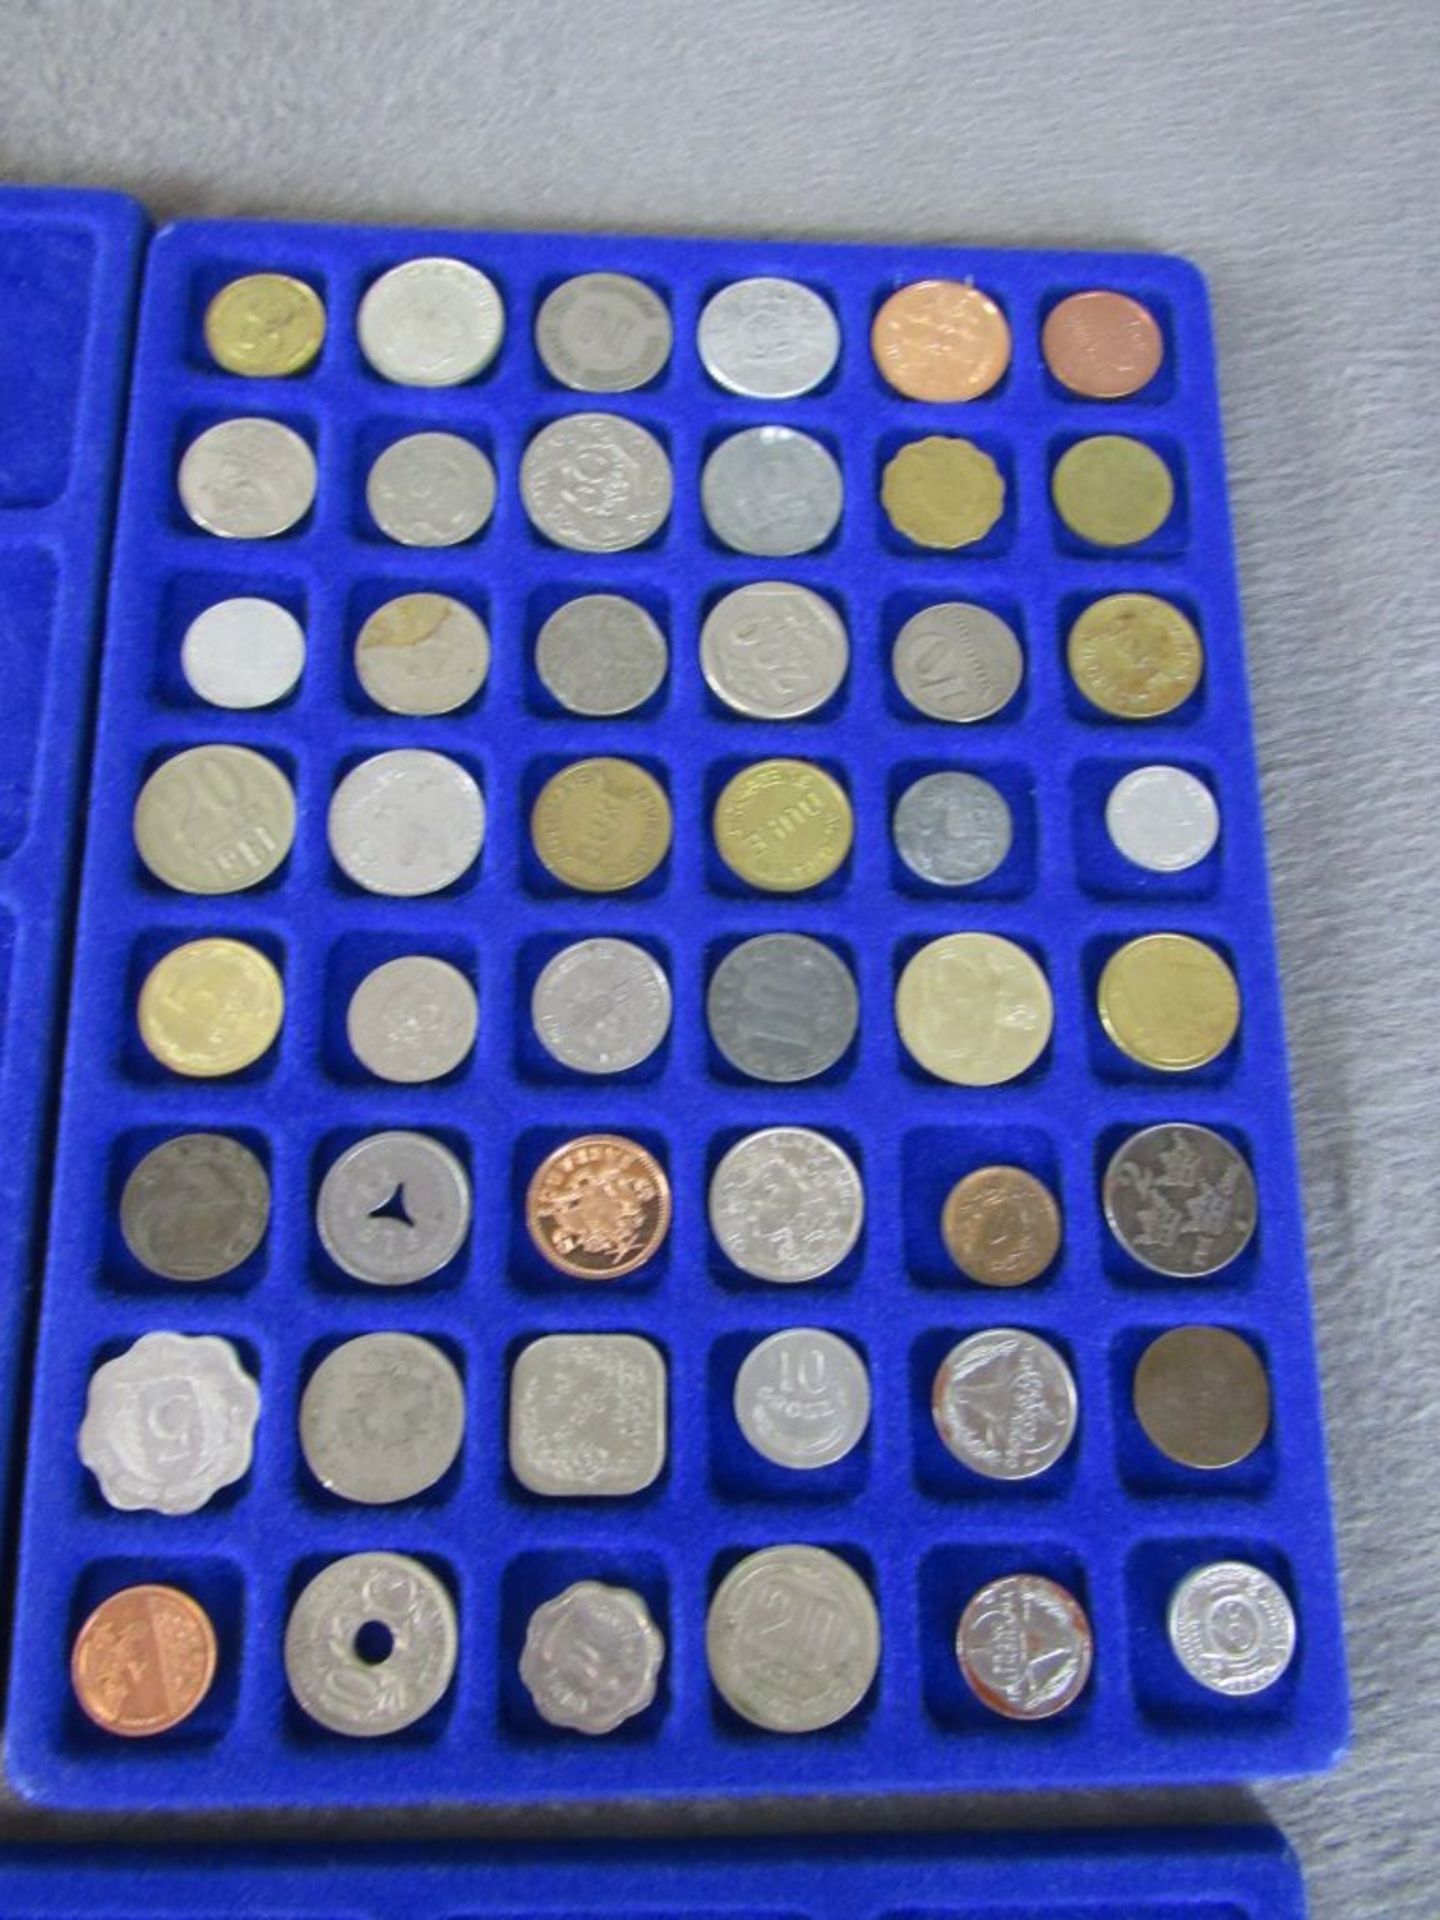 Schatulle mit Münzen und Medaillen alle Welt - Bild 2 aus 6